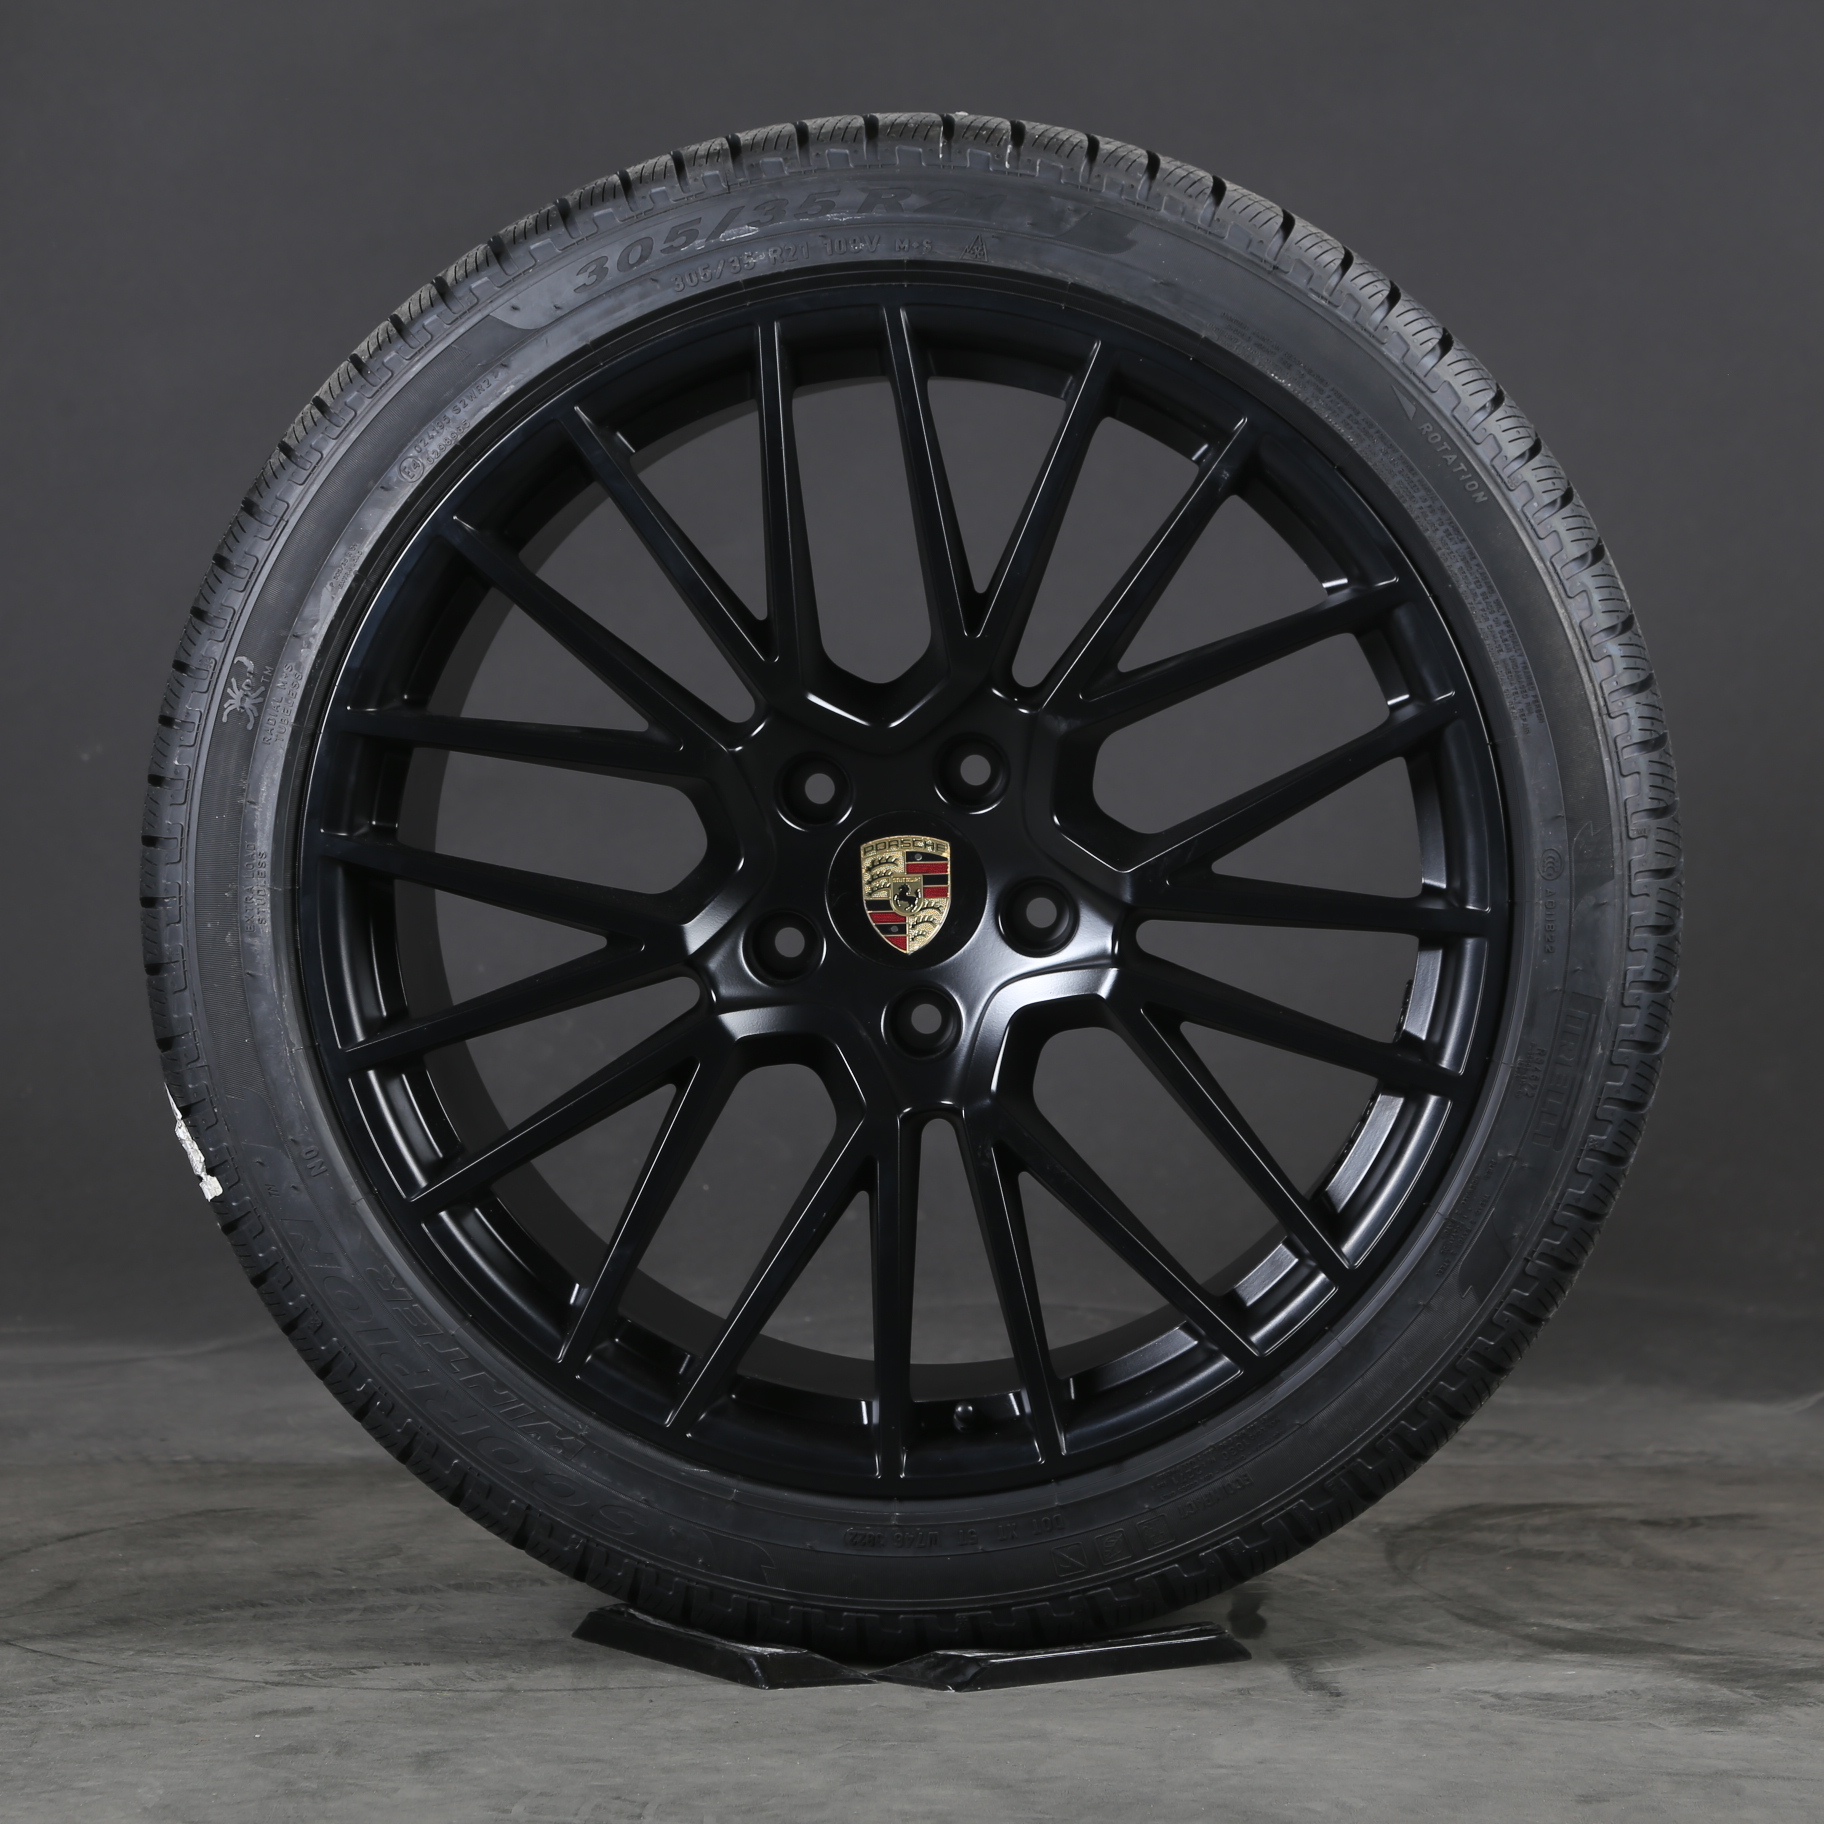 21 inch Porsche wheels E3 9Y Winter 9 RS Spyder Cayenne